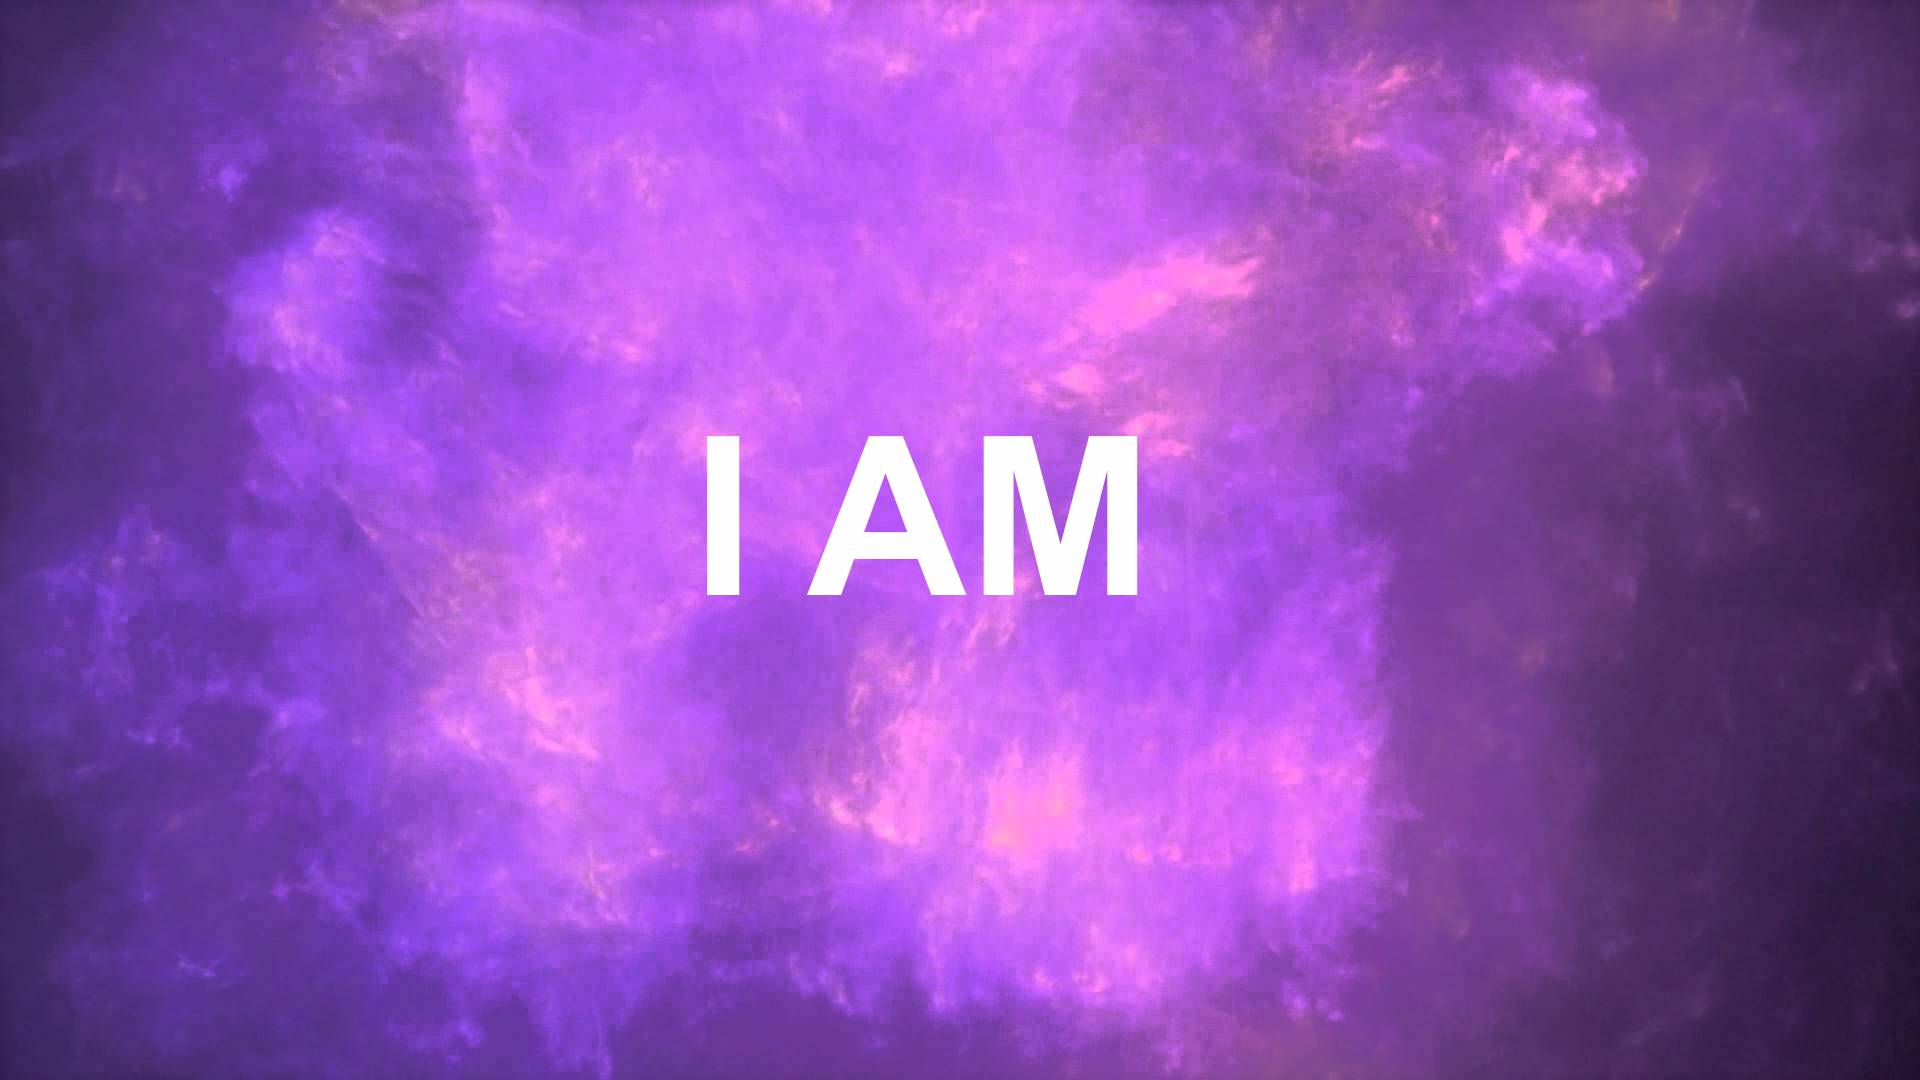 I AM